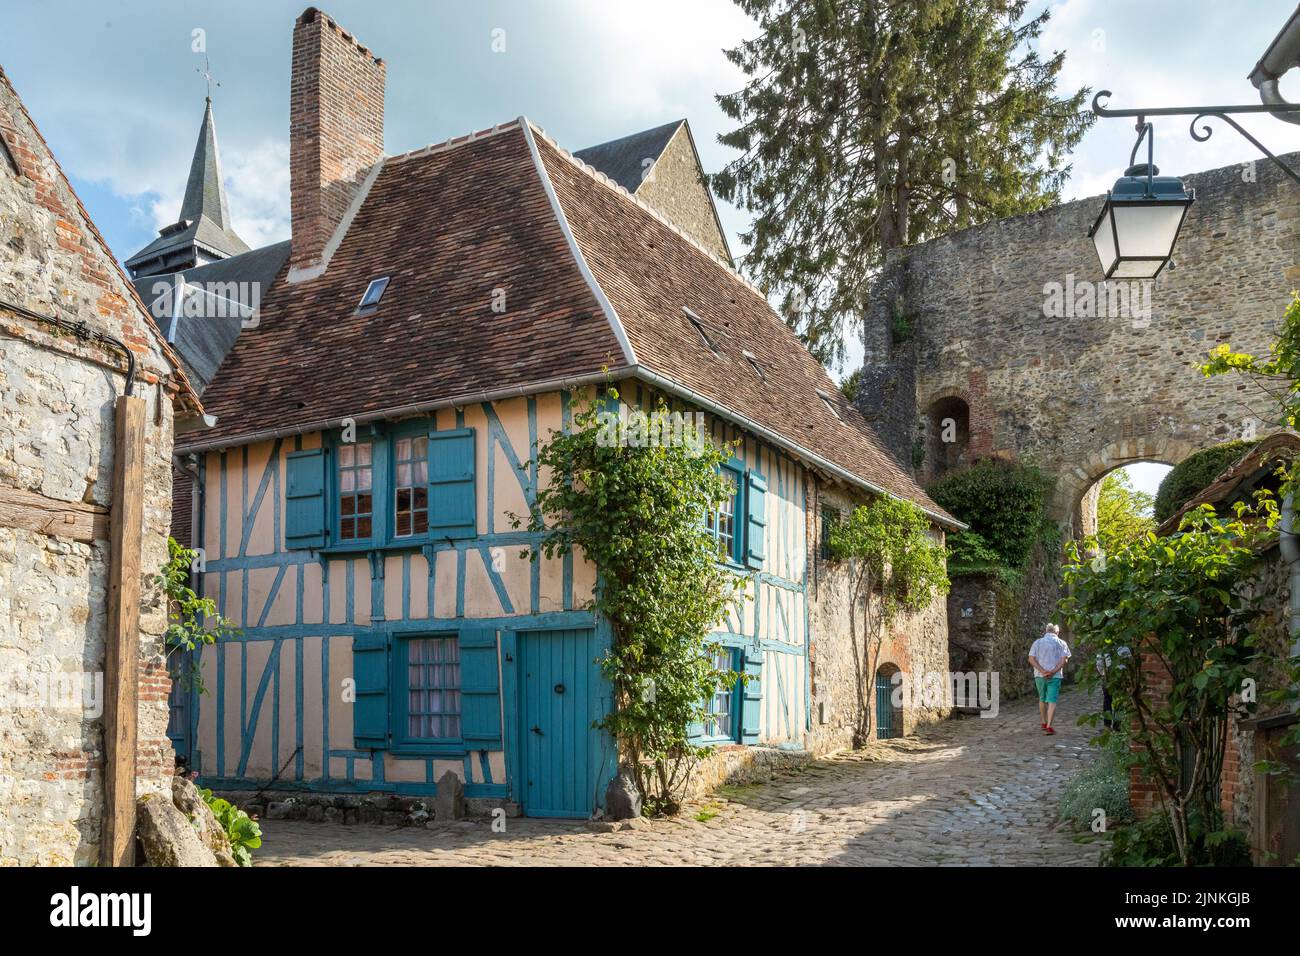 France, Oise, Picardie, Pays de Bray, Gerberoy, labelled Les Plus Beaux Villages de France (The Most Beautiful Villages of France), the gate tower and Stock Photo